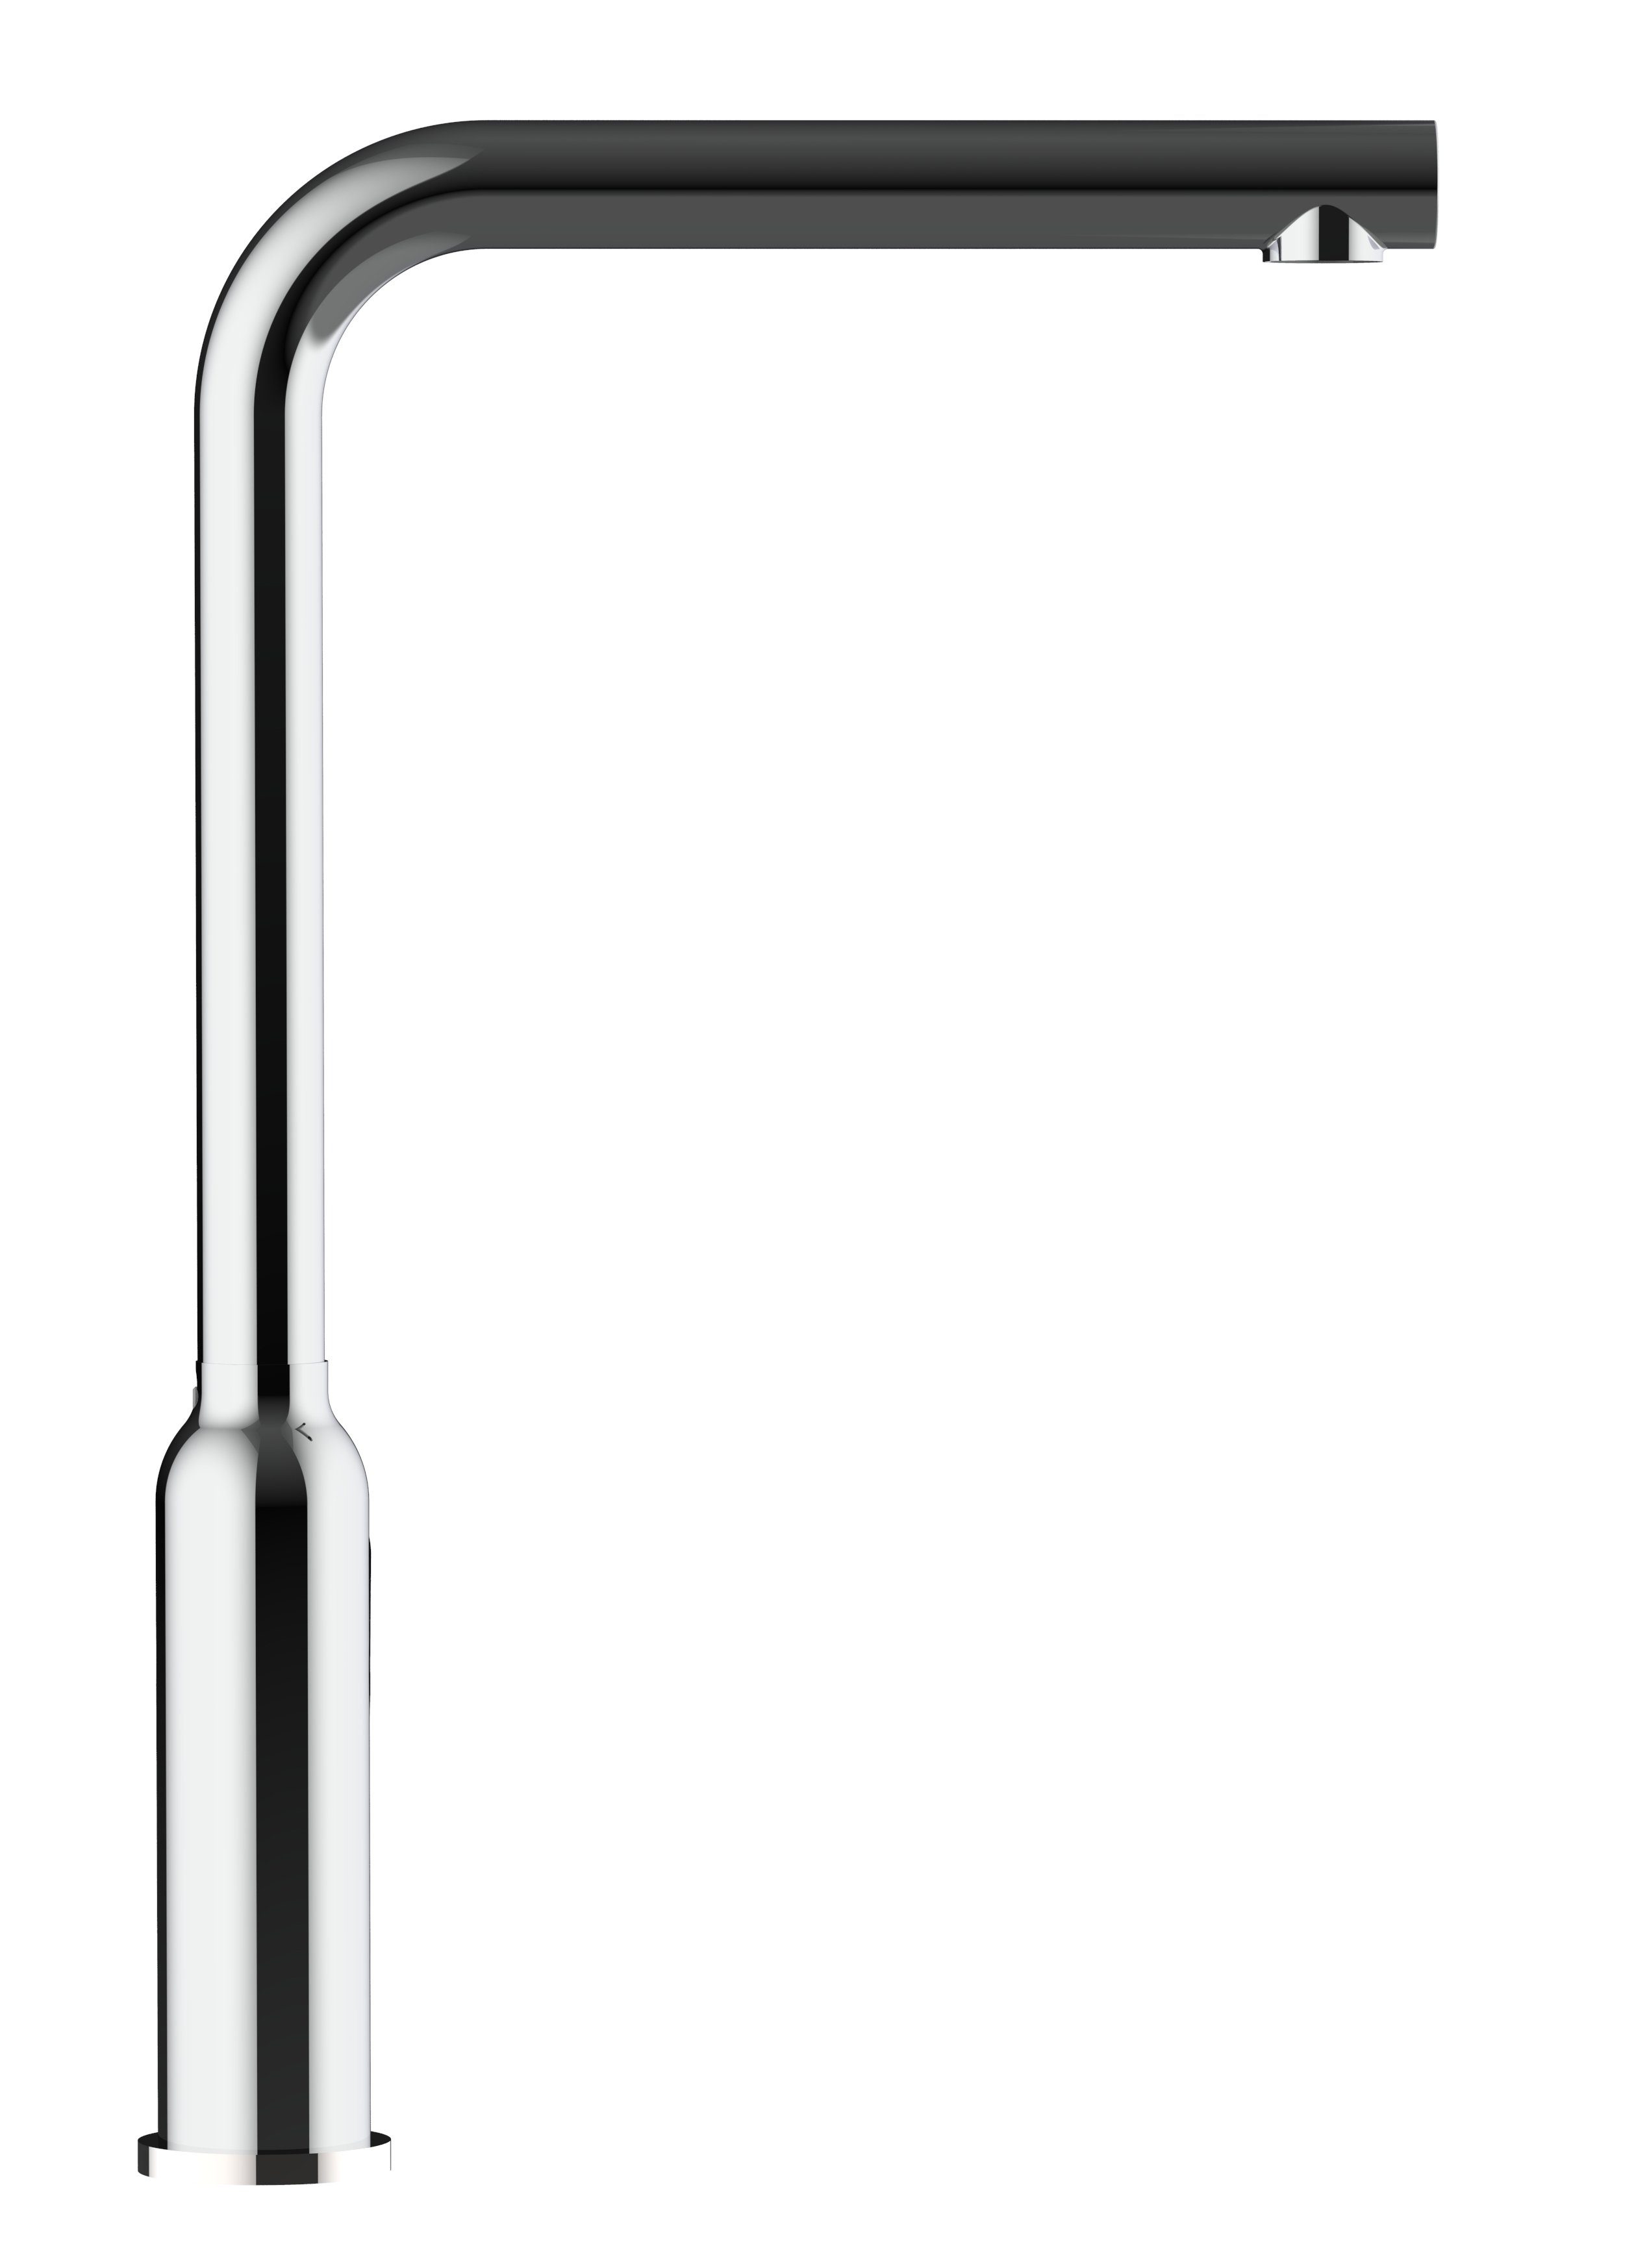 360° Küchenarmatur Wasserhahn mit schwenkbarem Verchromung Design VIZIO Küchenarmatur Auslauf chrom Hochdruck, Hochwertige